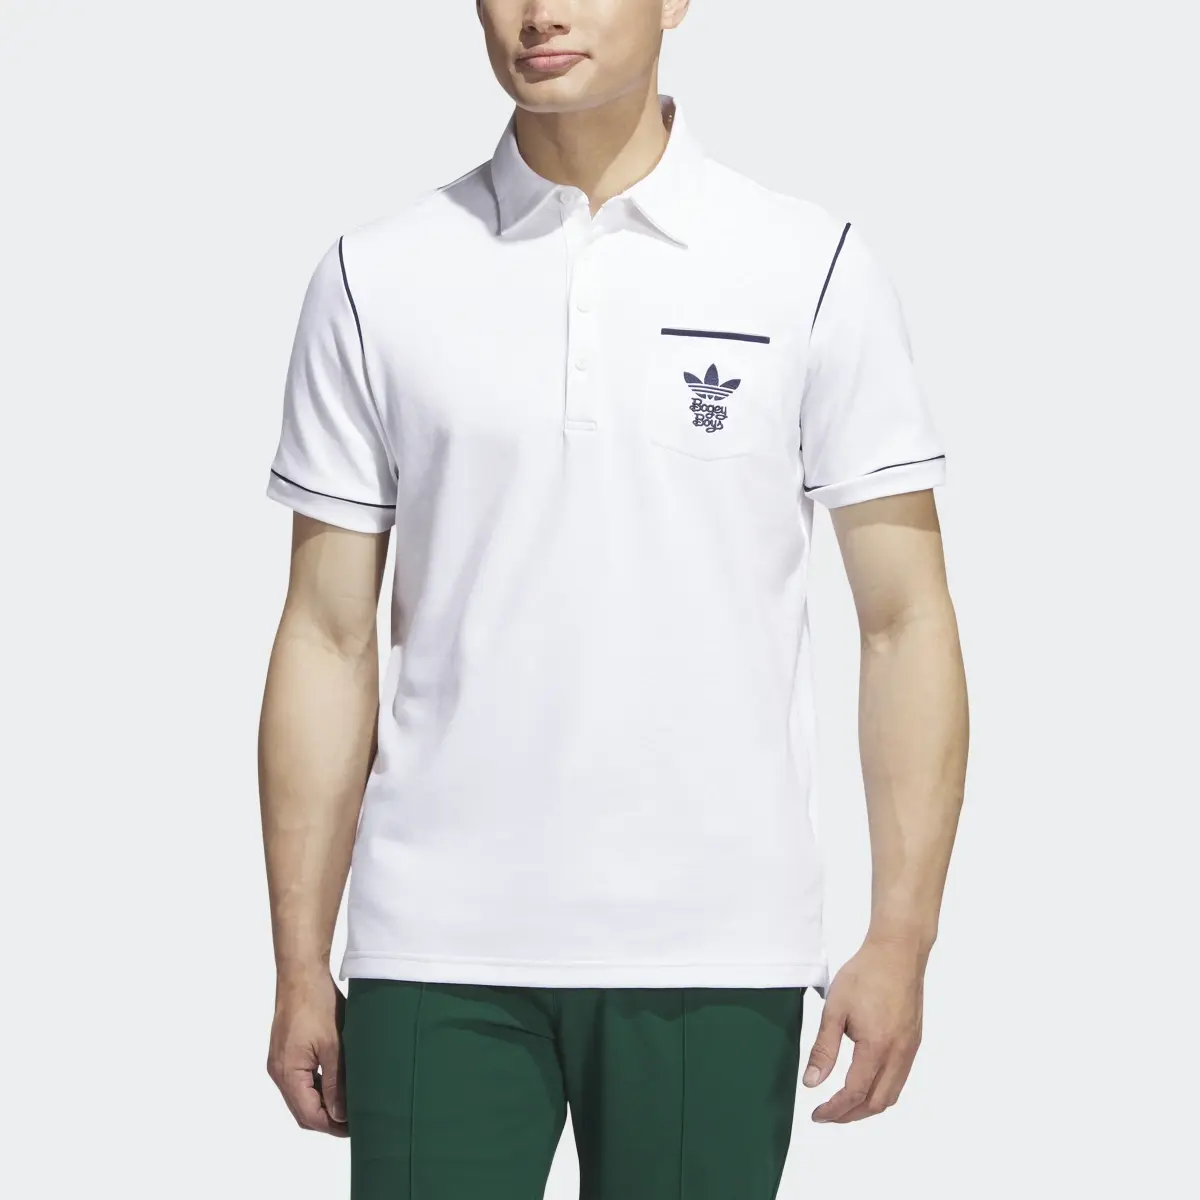 Adidas x Bogey Boys Polo Shirt. 1